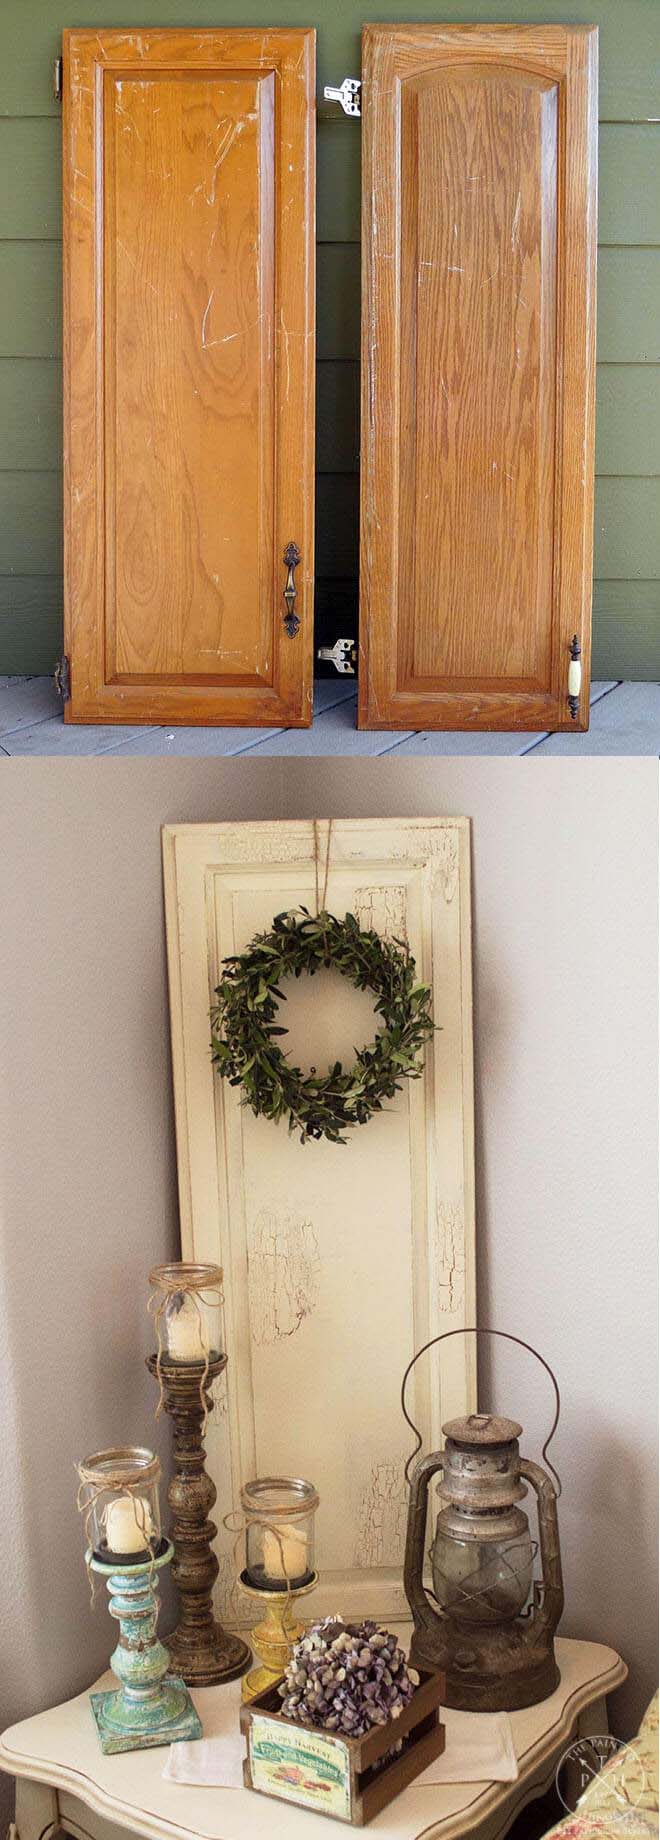 DIY Repurposed Cabinet Doors #repurpose #cabinet #door #decorhomeideas